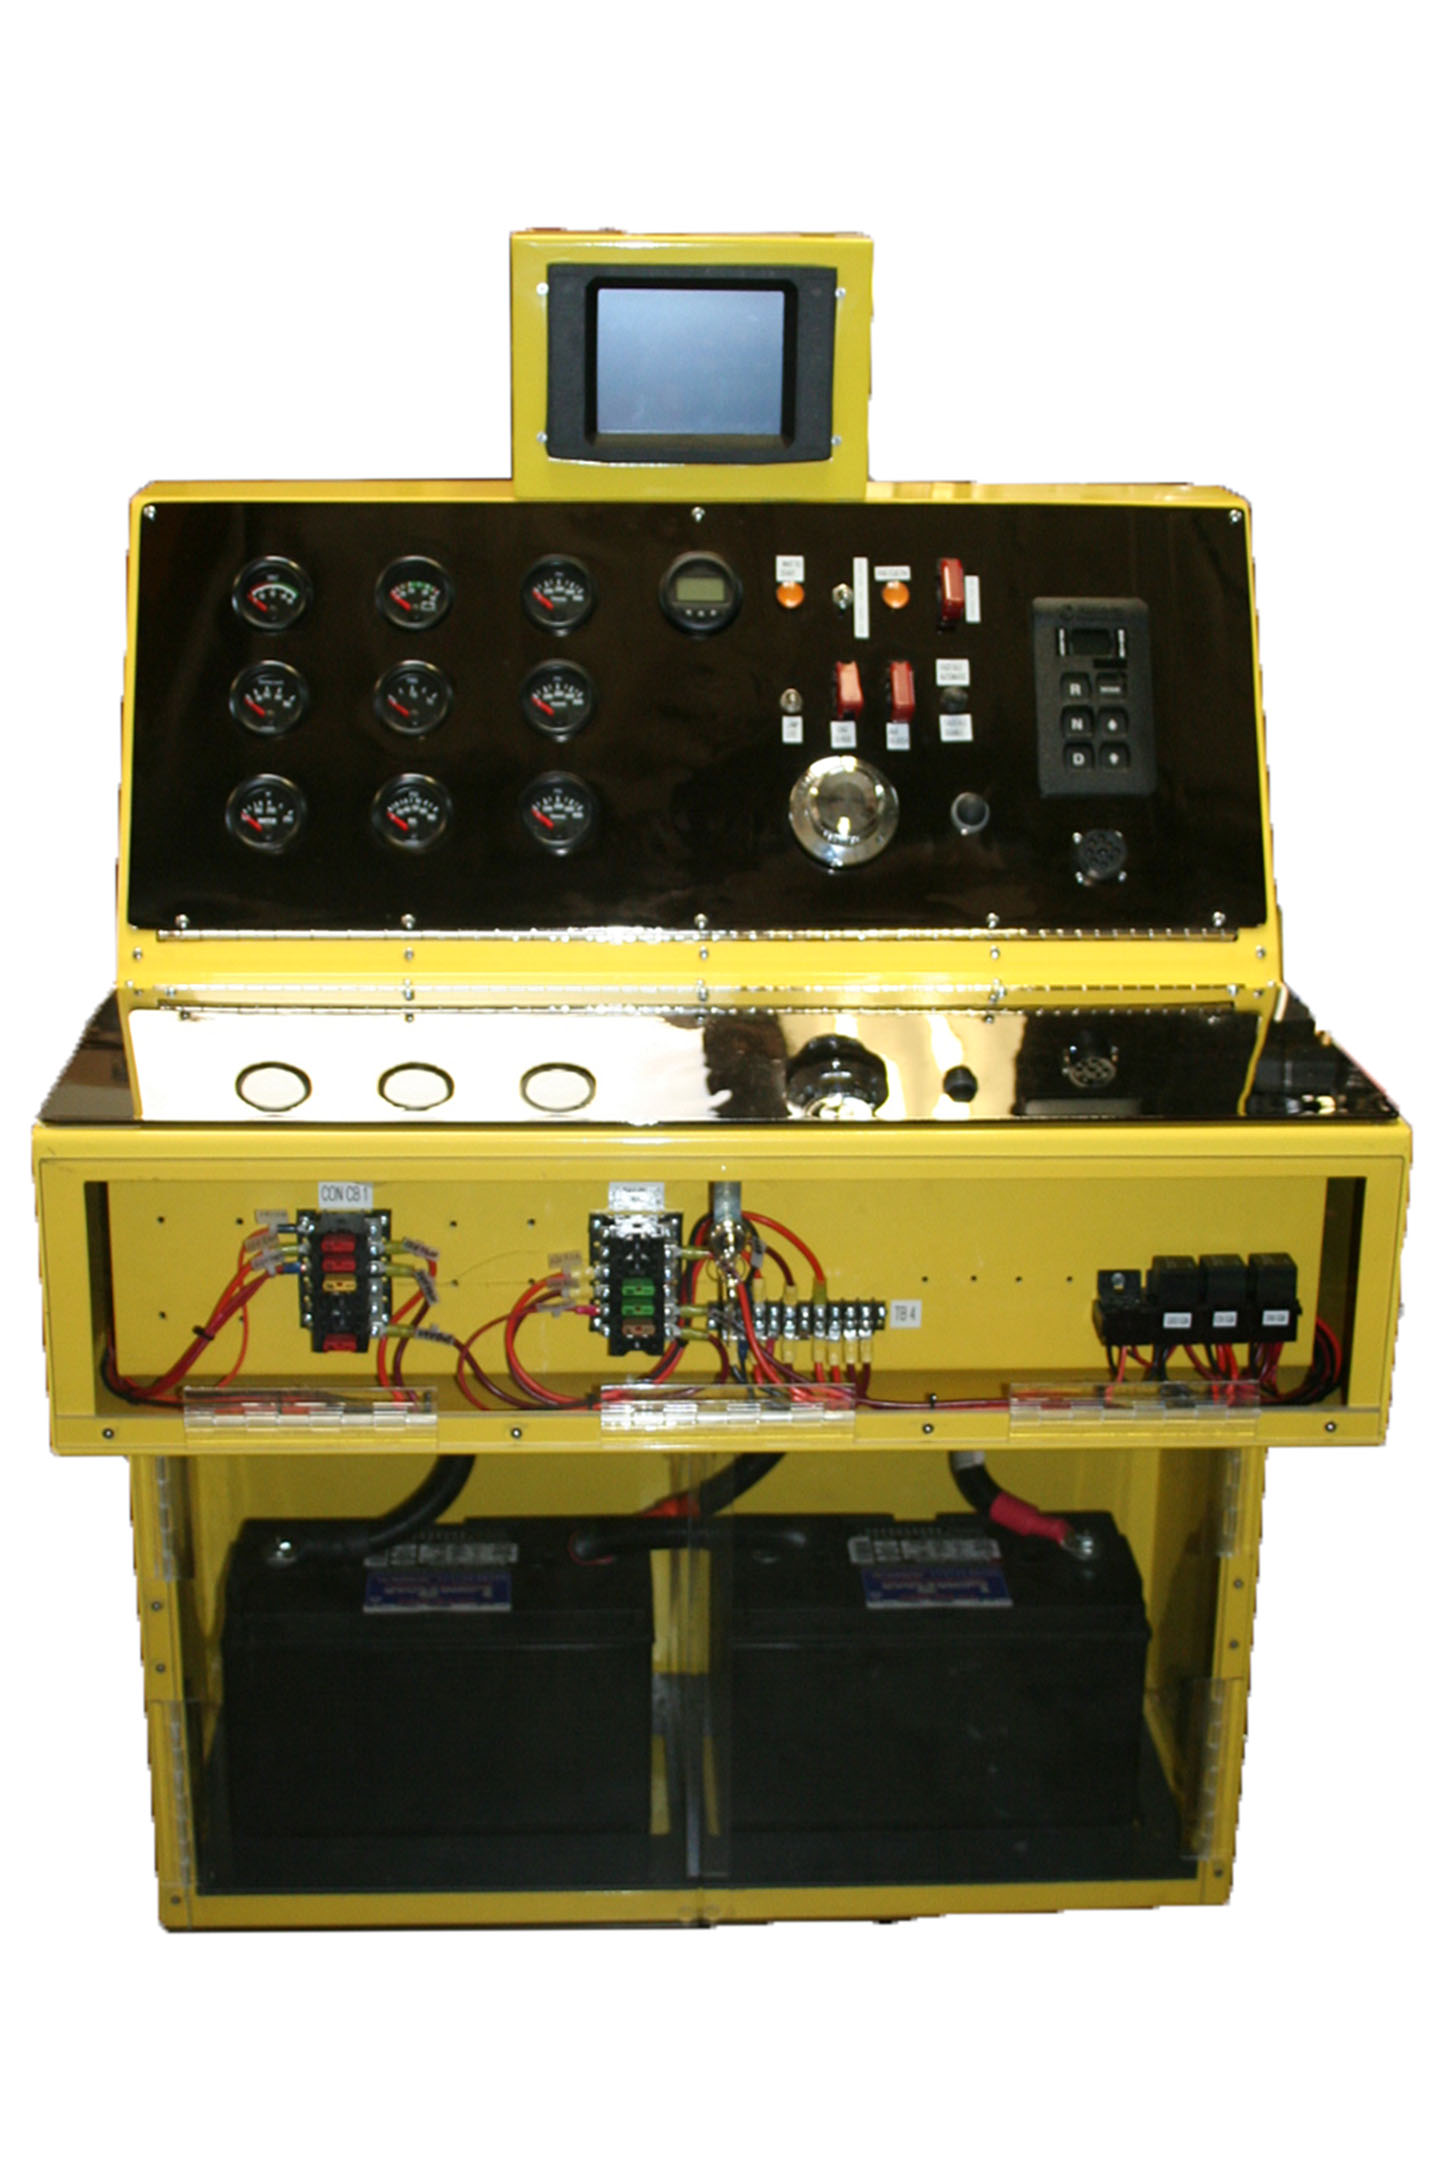 Power Plant Module Control Console